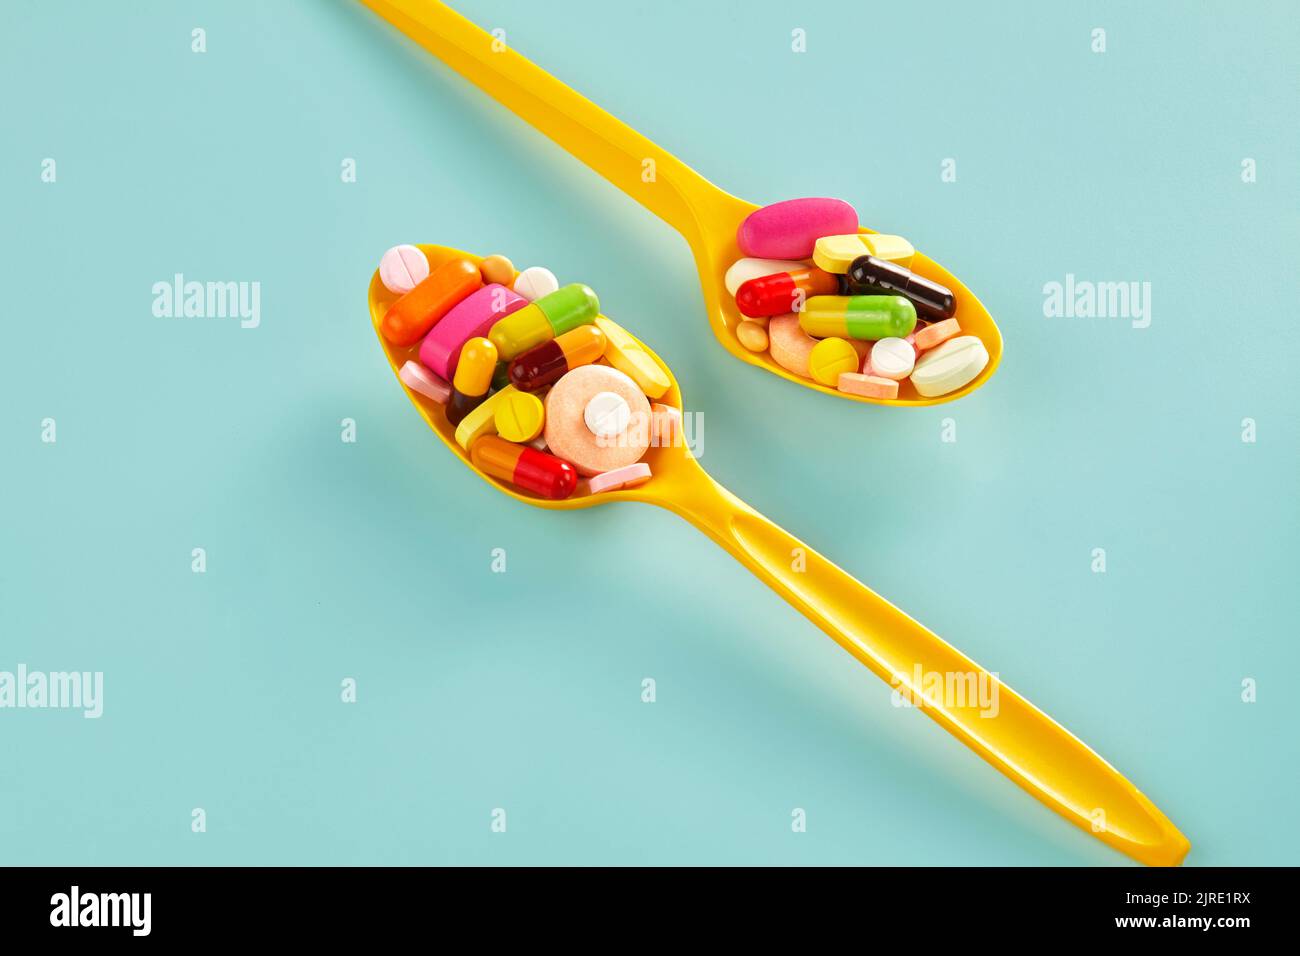 due pile di medicinali di forme e colori diversi su un cucchiaio di plastica gialla Foto Stock